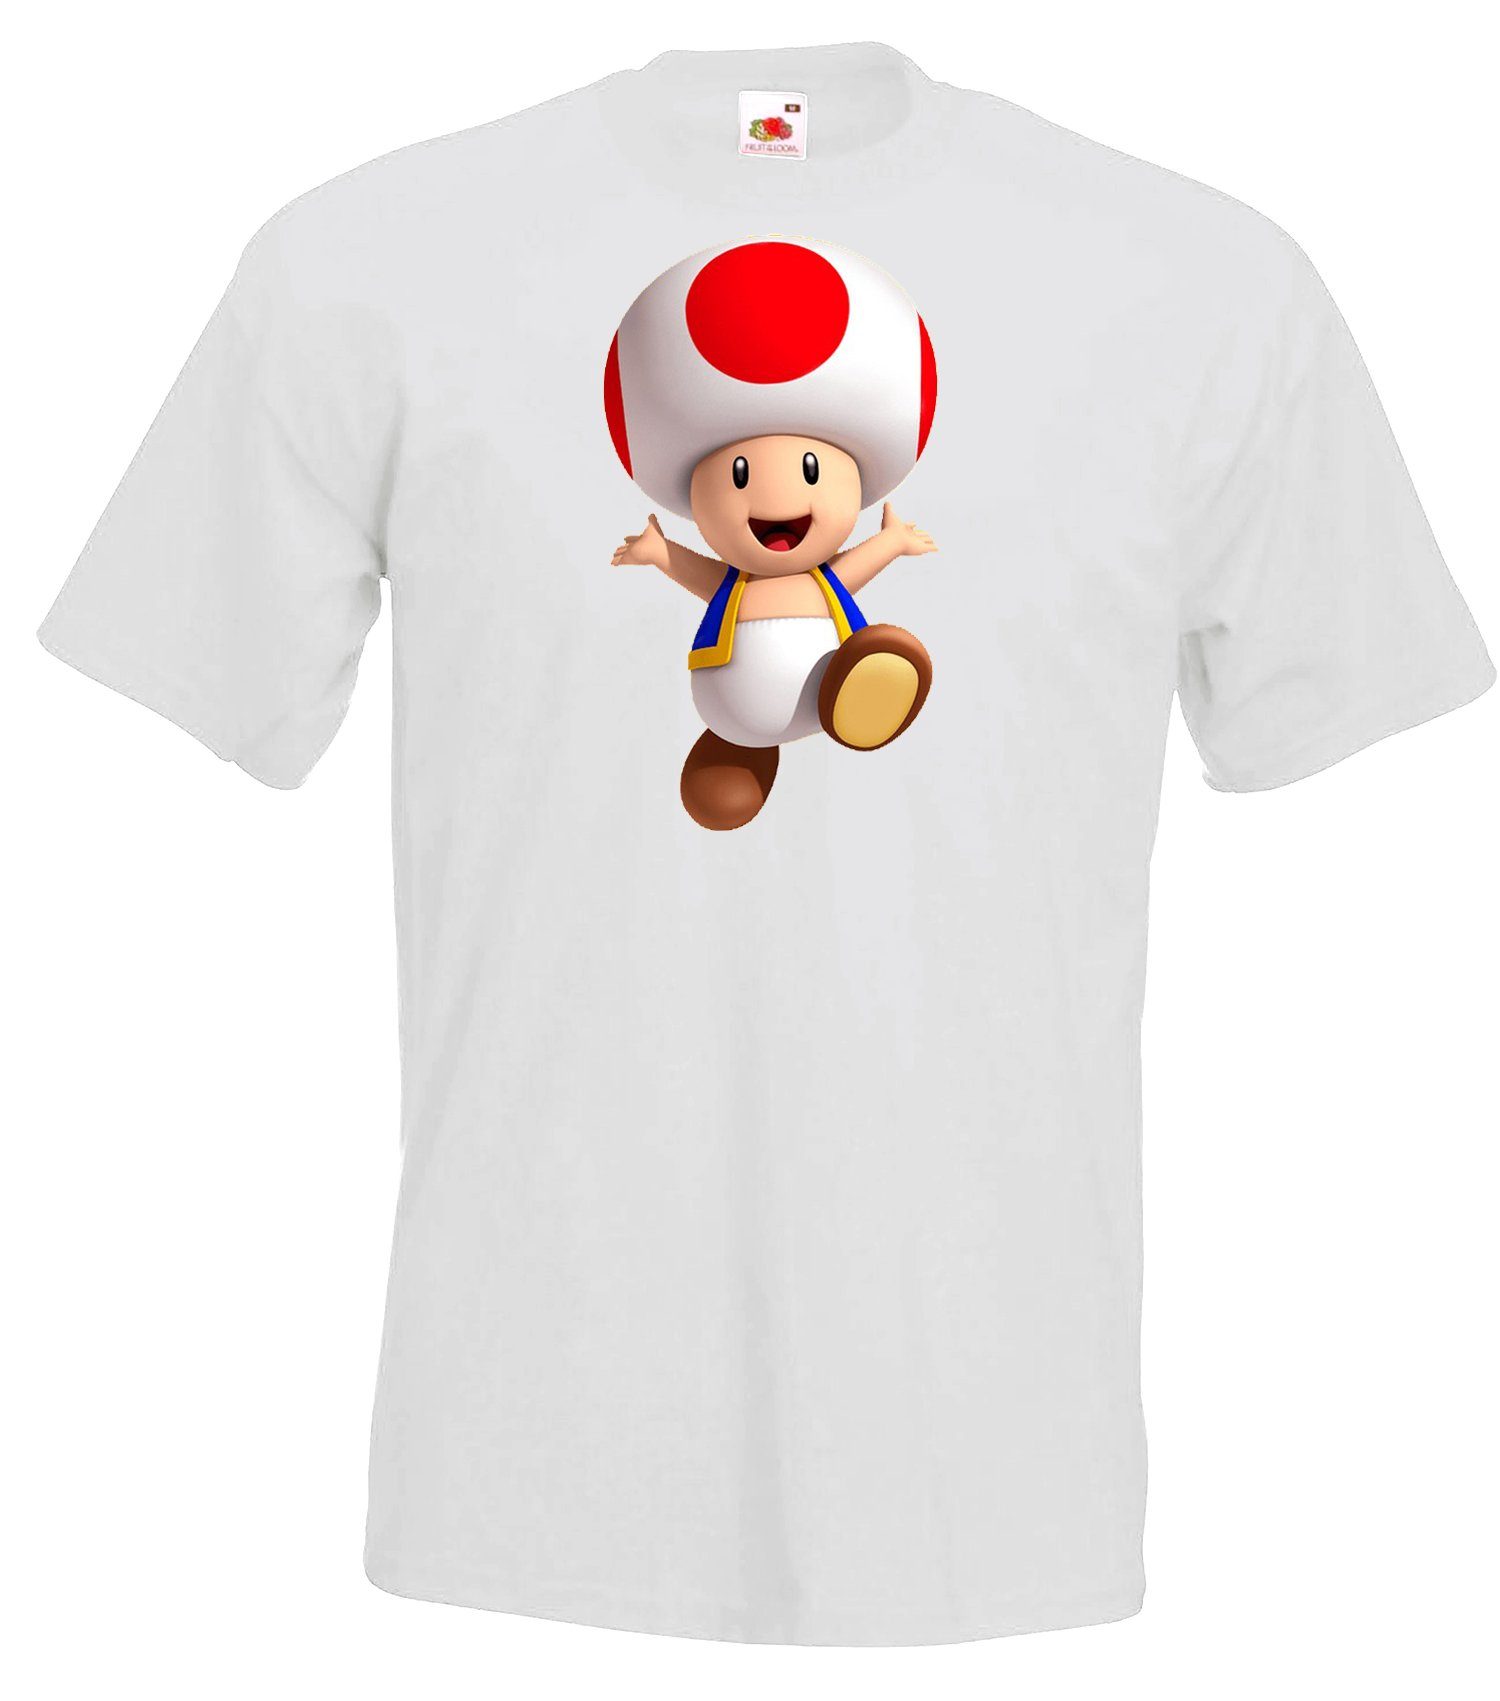 Youth Designz Herren T-Shirt Fun Toad T-Shirt Frontprint trendigem Weiß mit